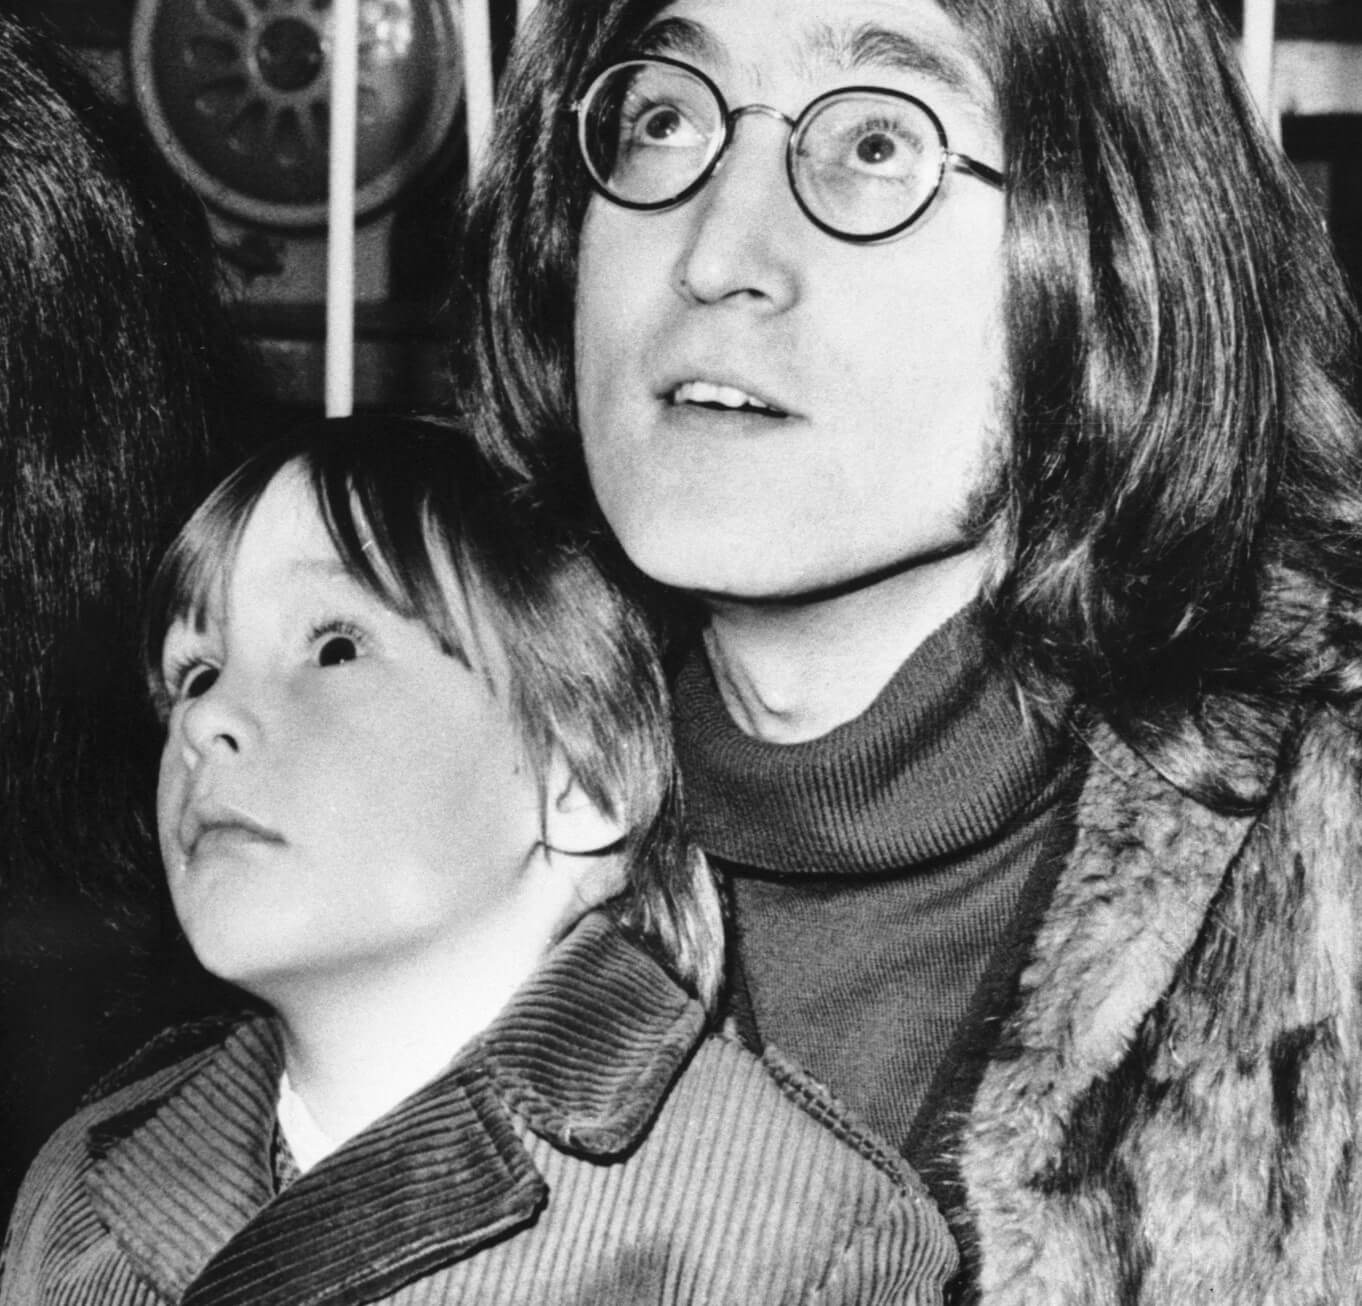 John Lennon and his son, Julian Lennon, in black-and-white